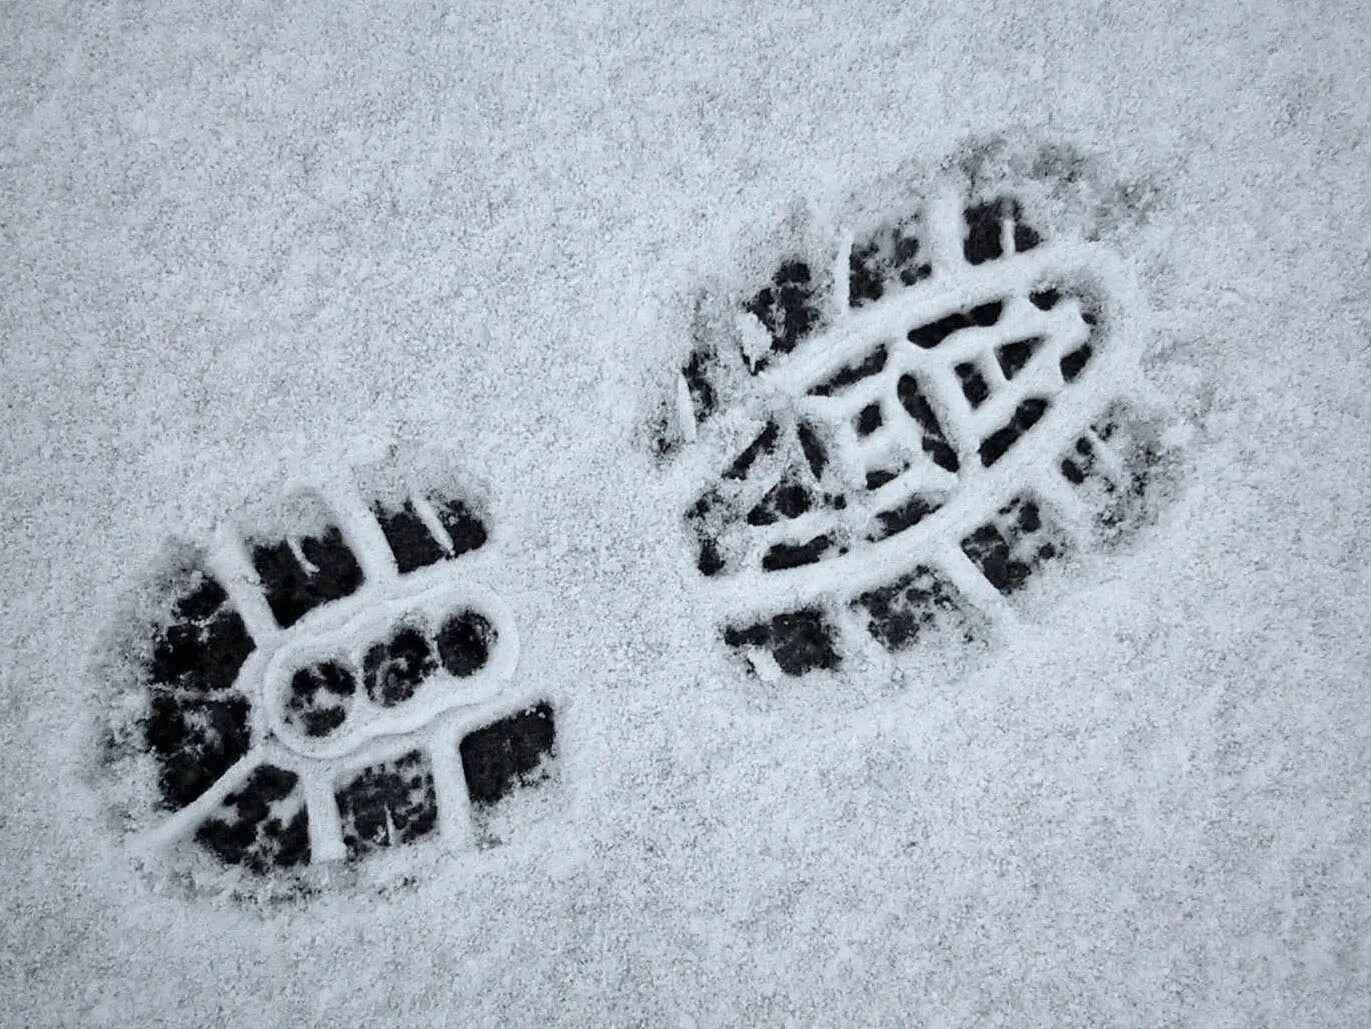 След нетленка. Отпечаток обуви на снегу. Следы на снегу. Следы обуви на снегу криминалистика. Следы сапог на снегу.